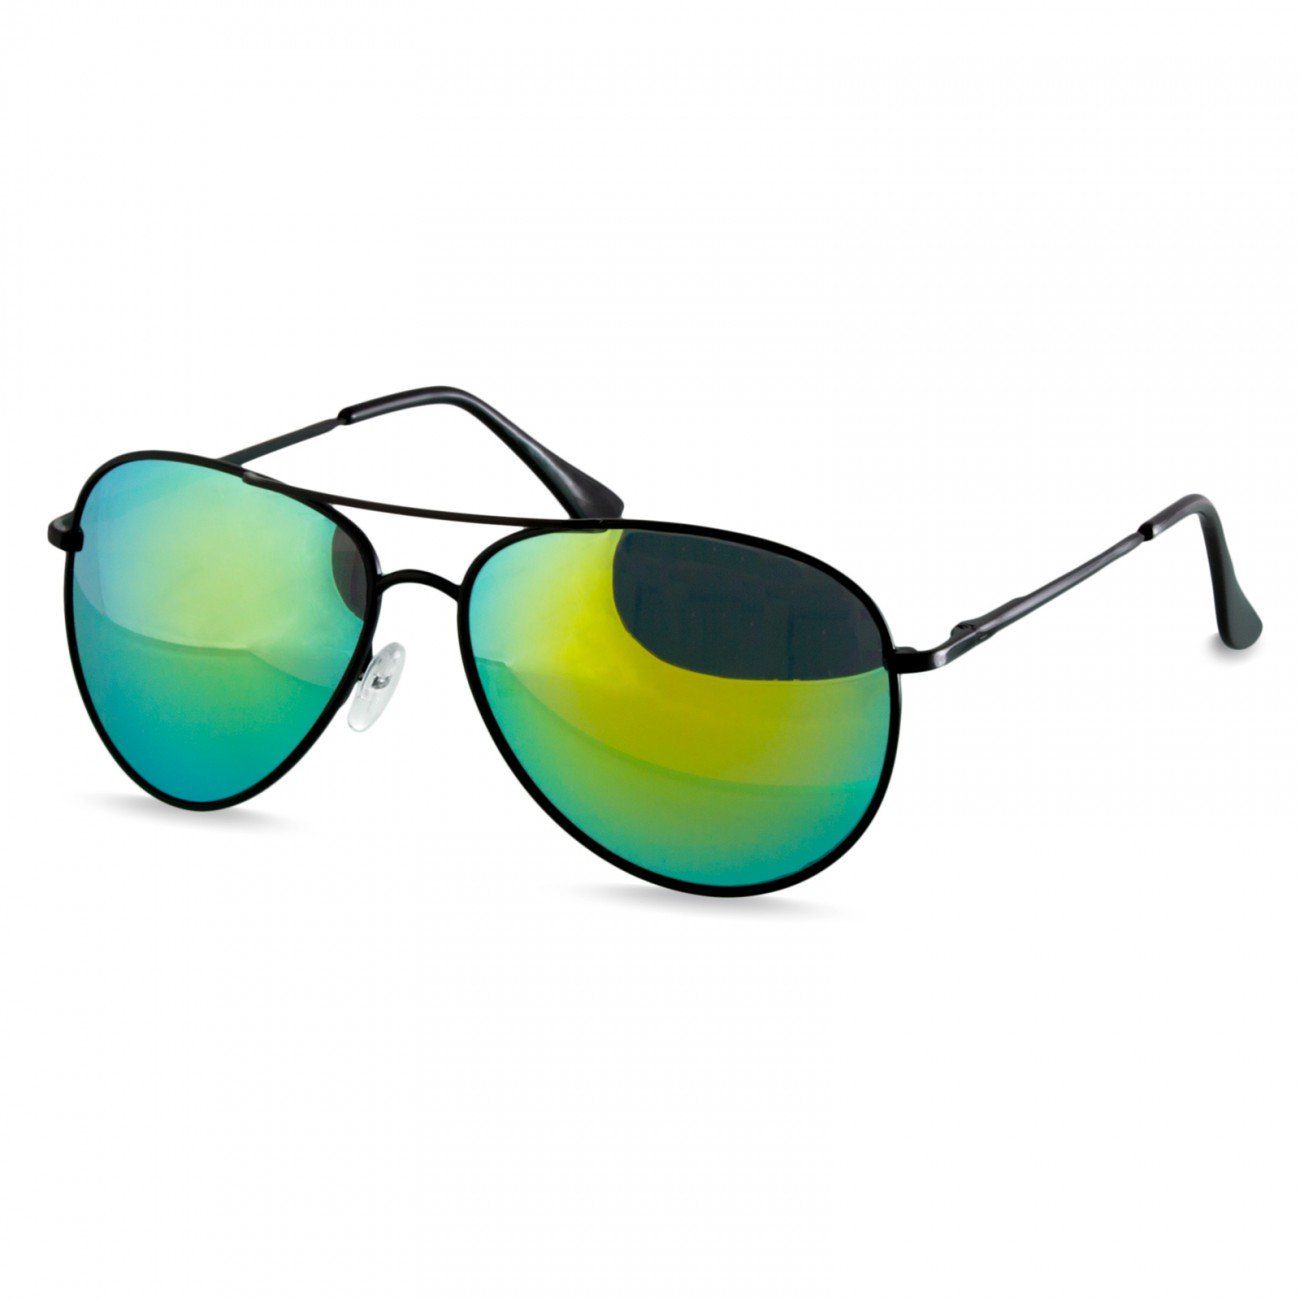 Caspar Sonnenbrille SG013 klassische Unisex Retro Pilotenbrille schwarz / grün gold verspiegelt